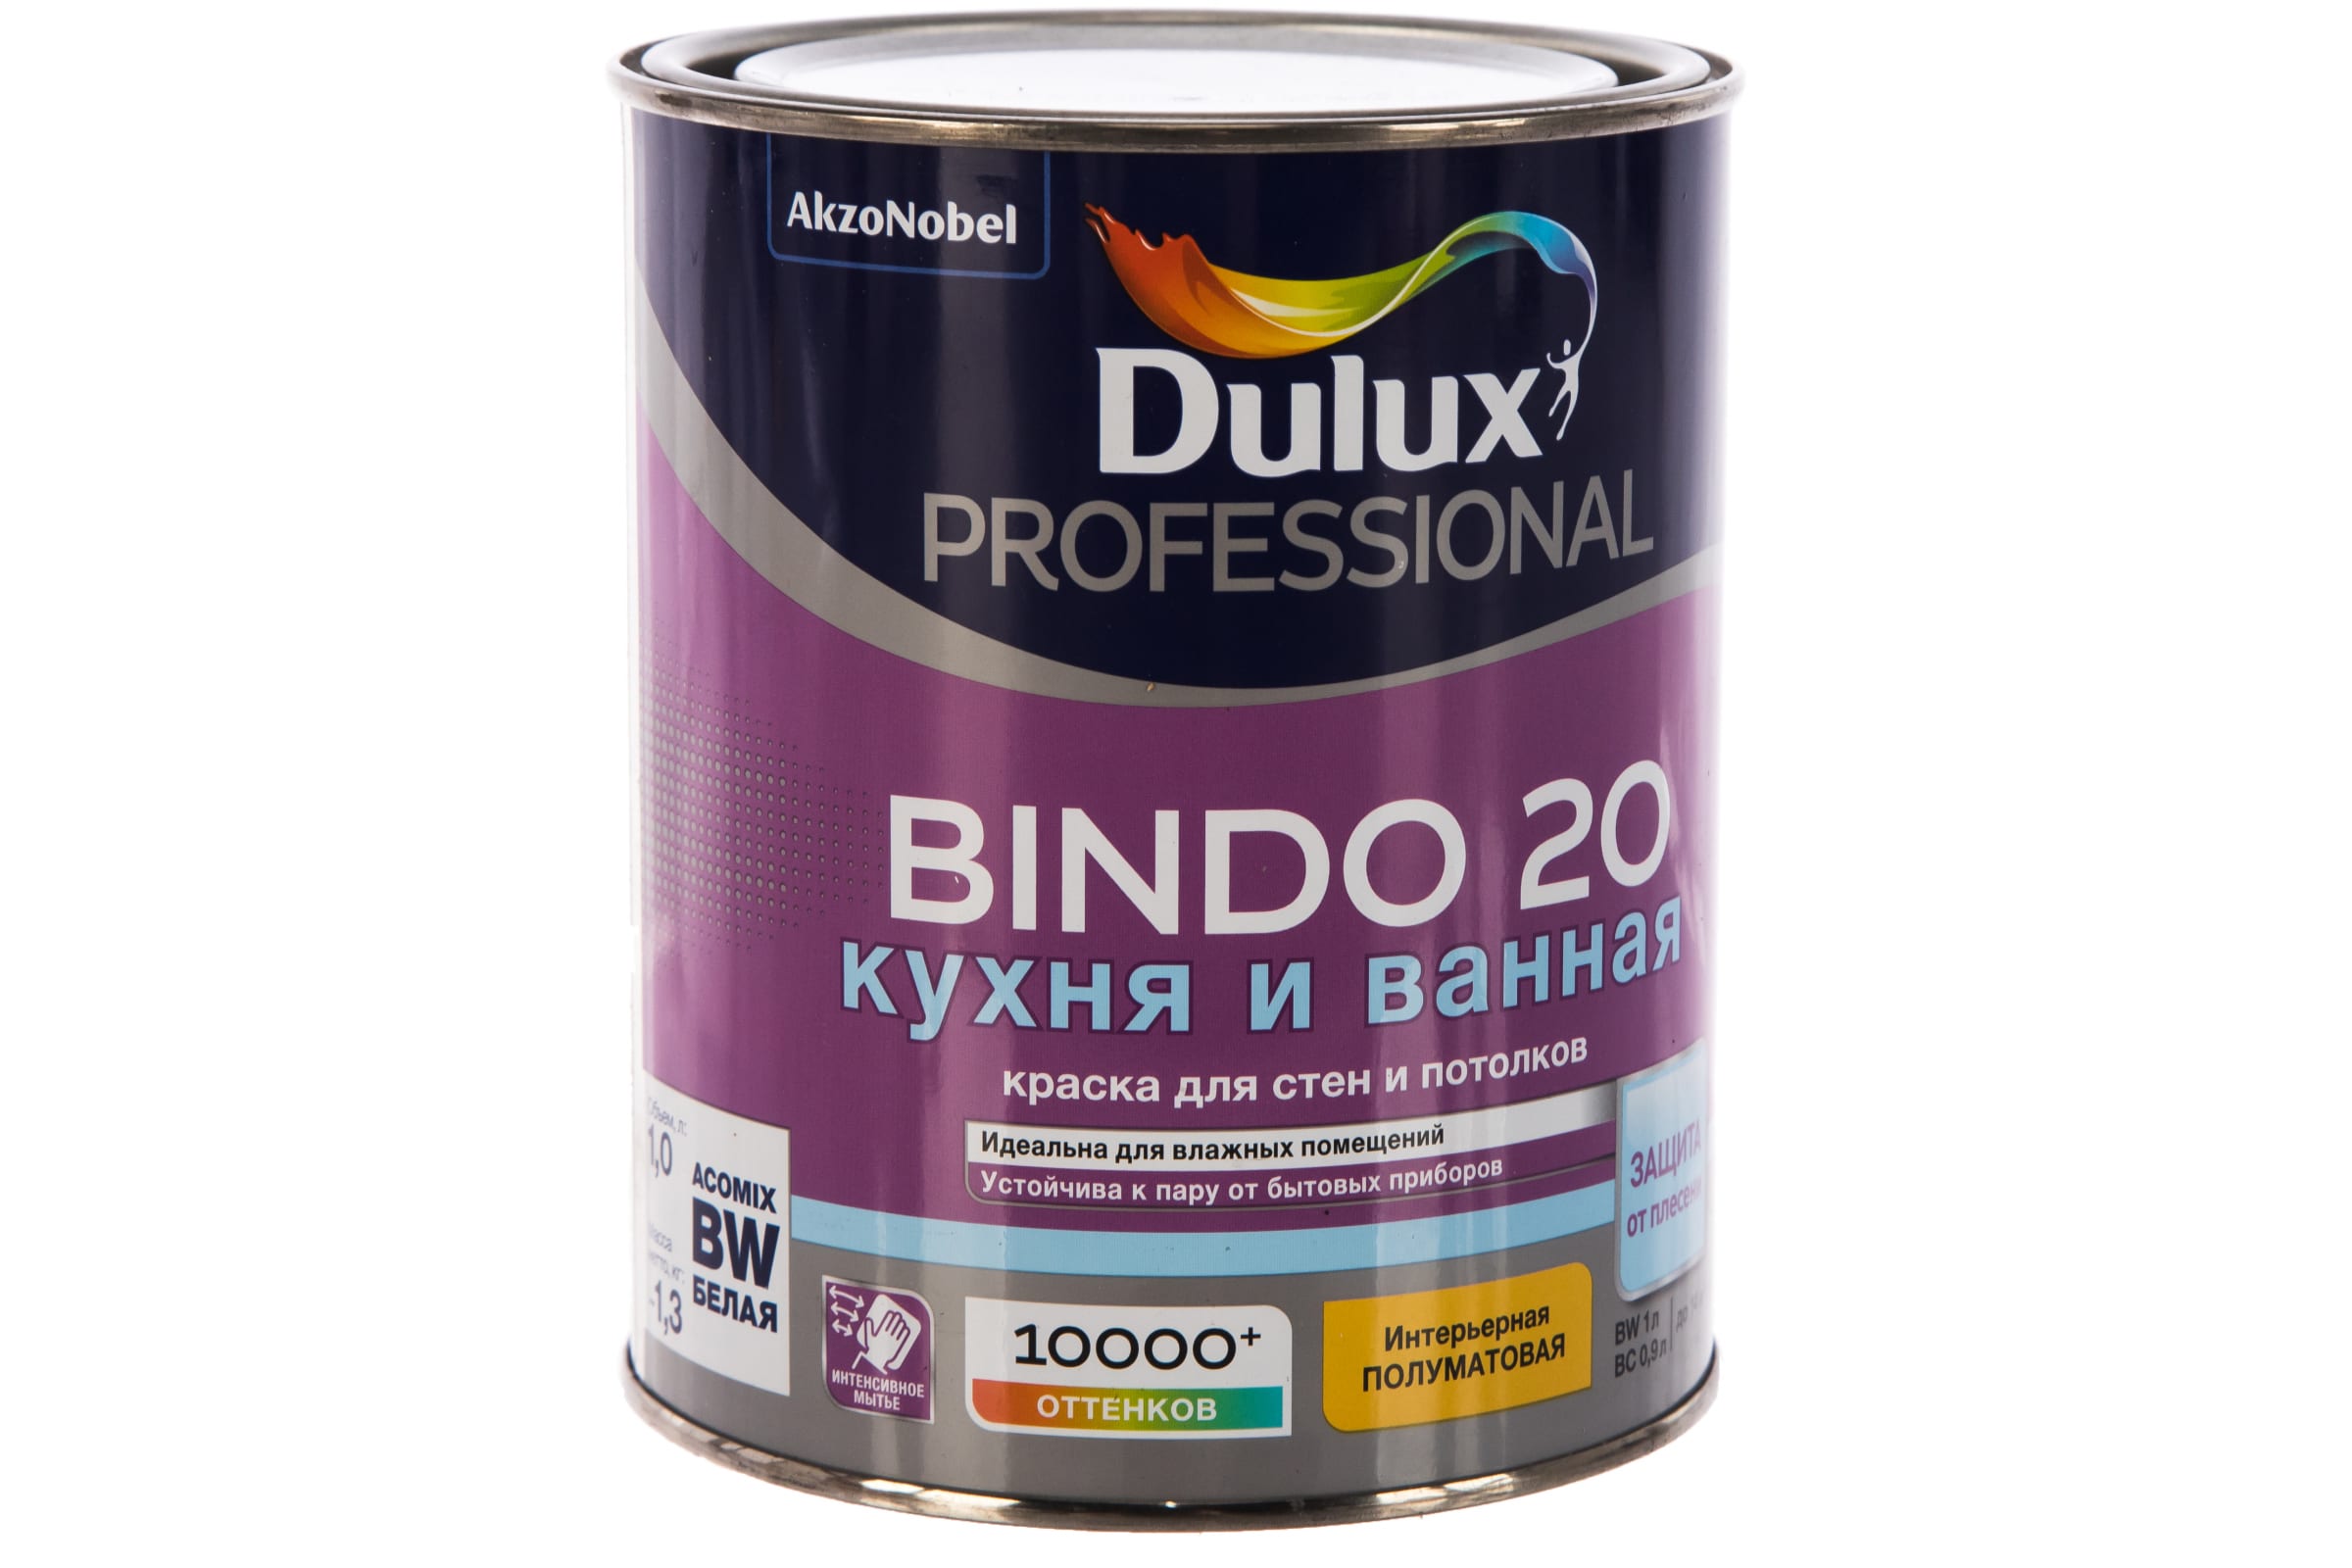 

Краска Dulux Professional Bindo для кухни и ванной латексная 20 полуматовая база BC 0,9 л, Белый